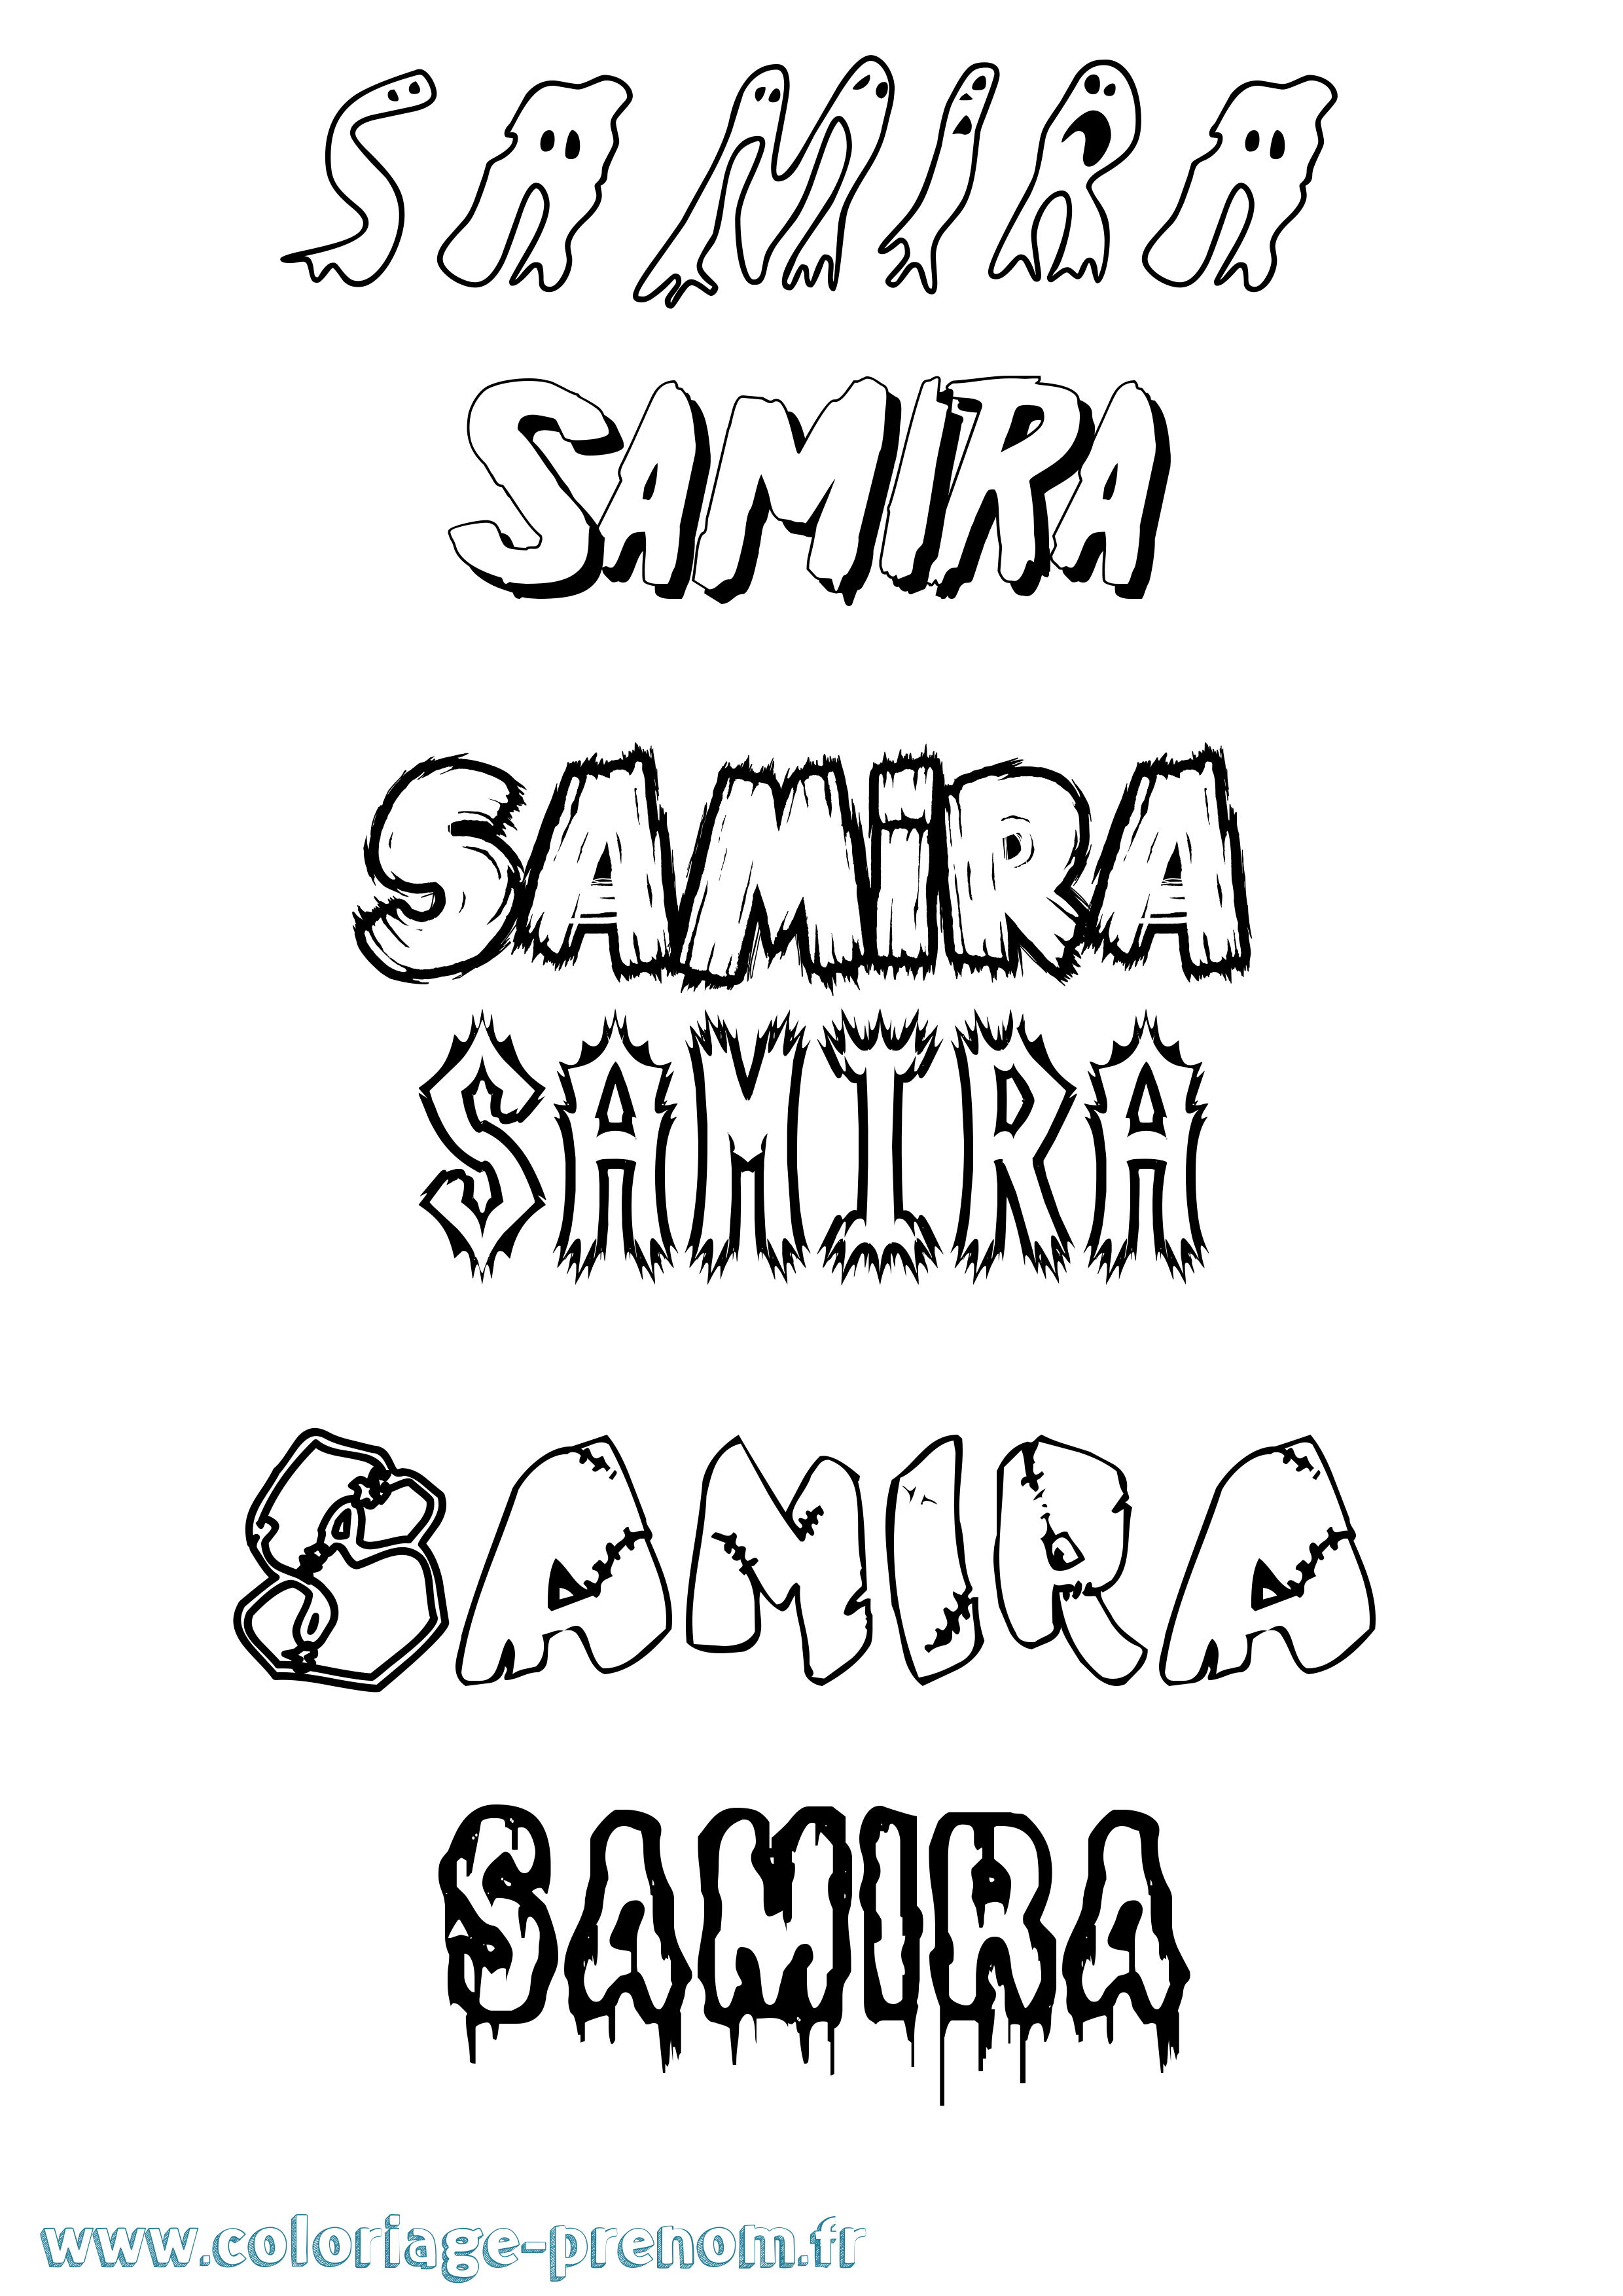 Coloriage prénom Samira Frisson